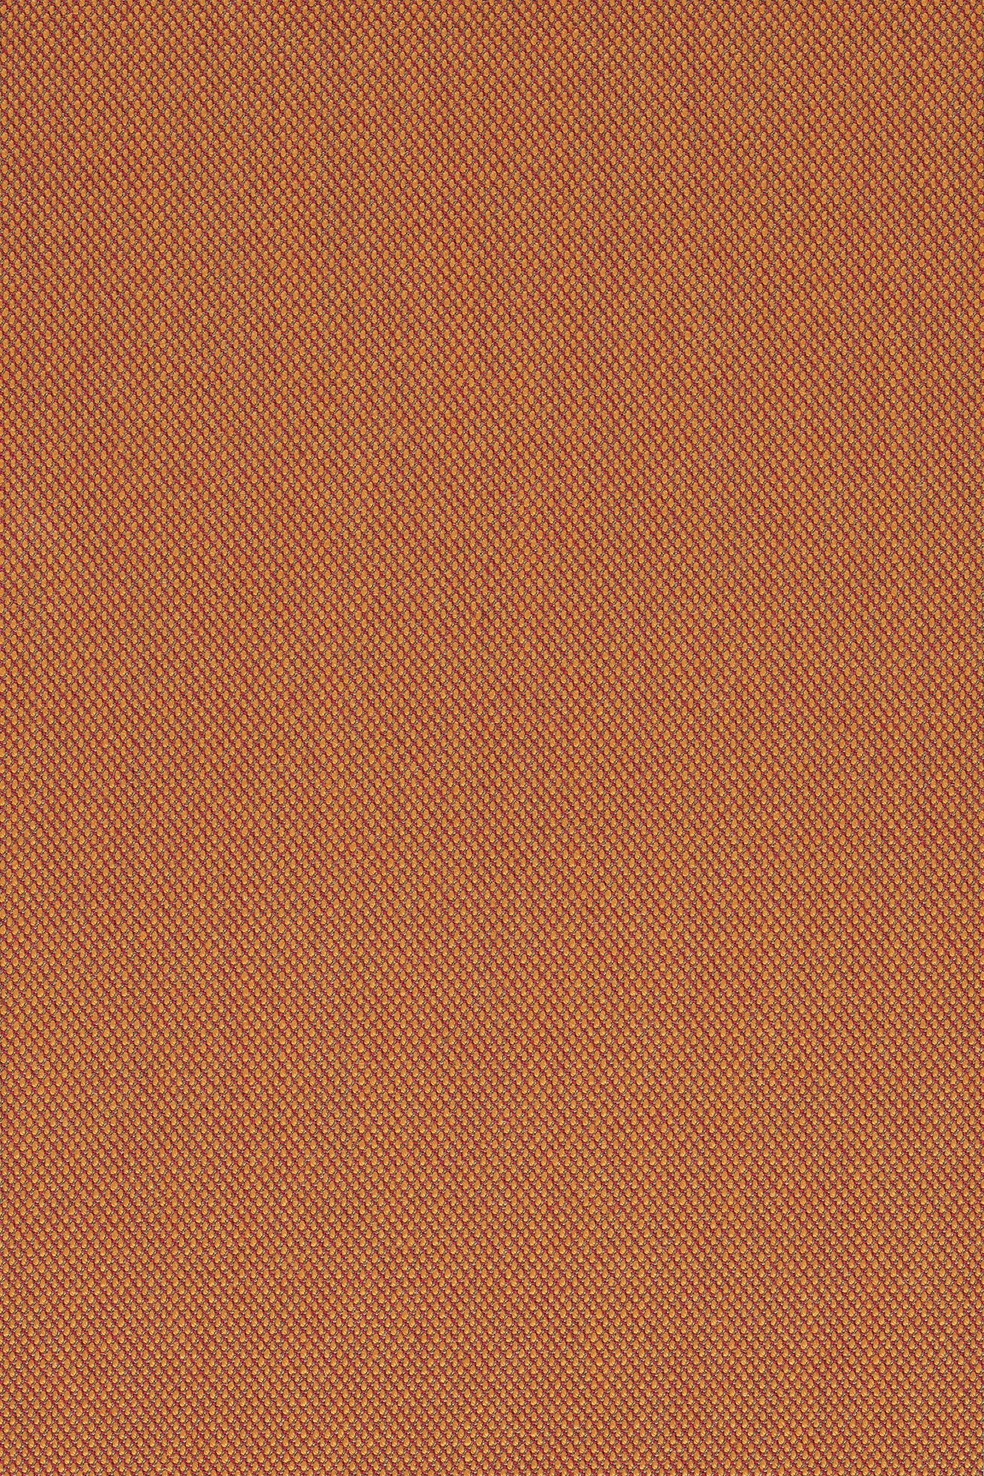 Fabric sample Steelcut Trio 3 576 orange